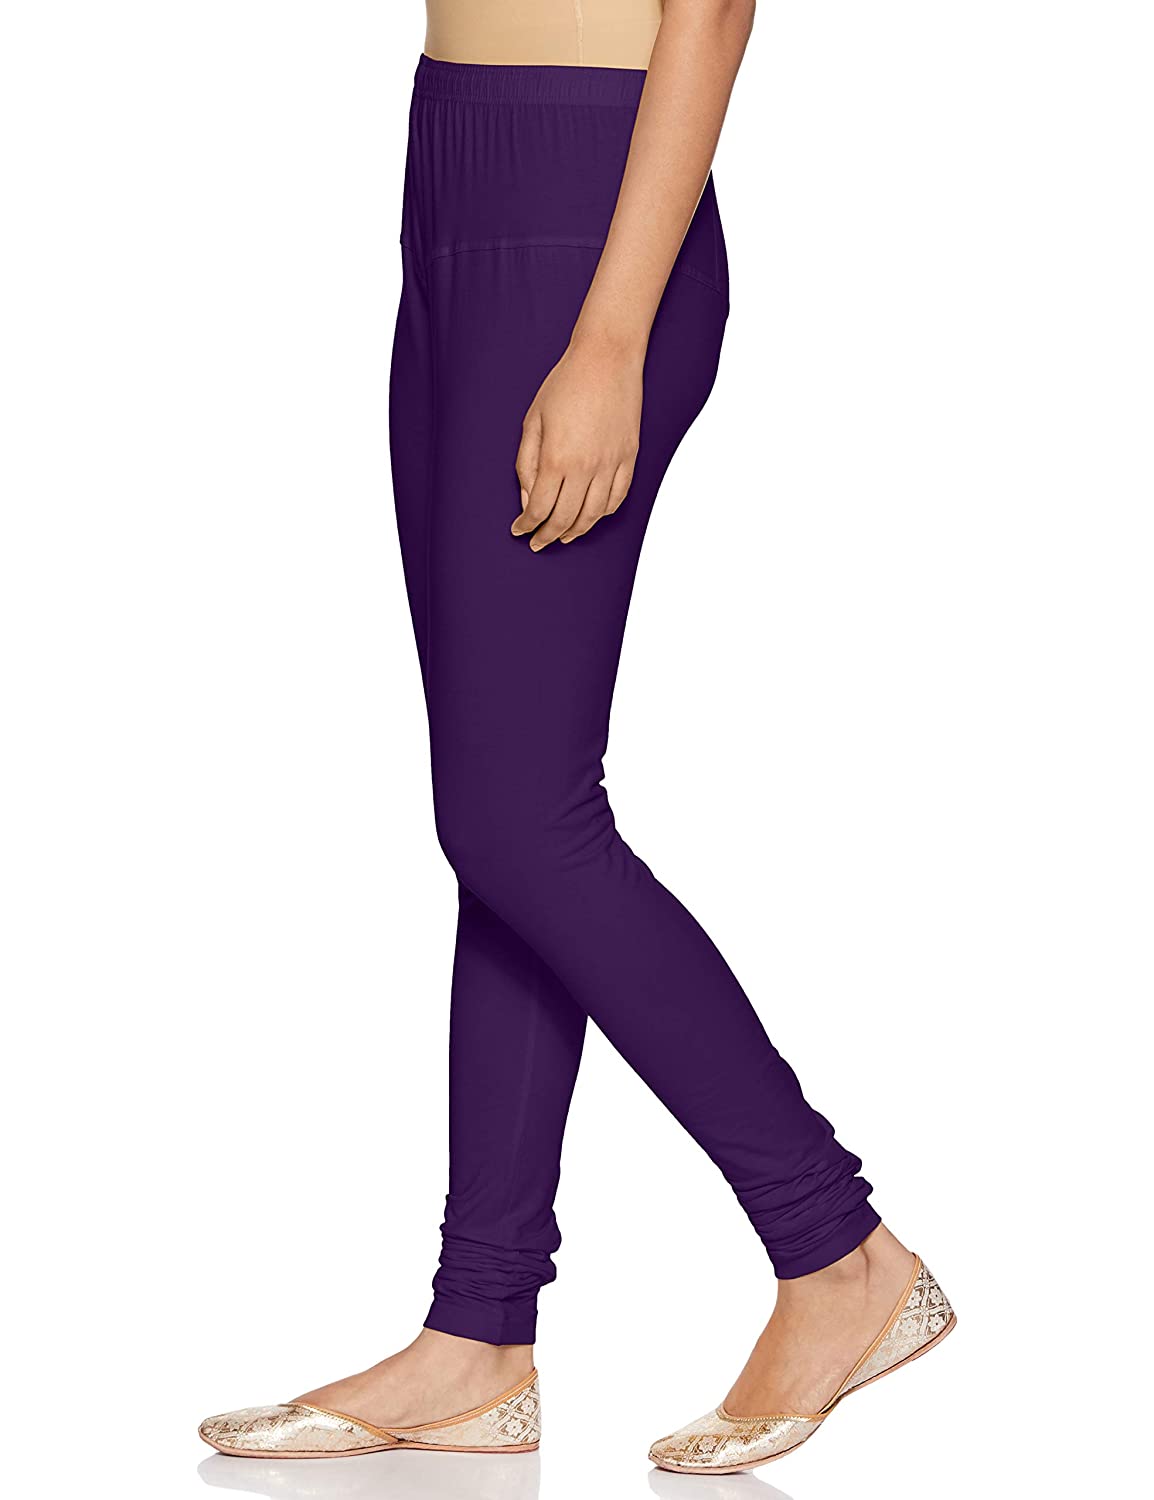 Rupa churidar Purple Cotton Leggings for Girls - Stilento